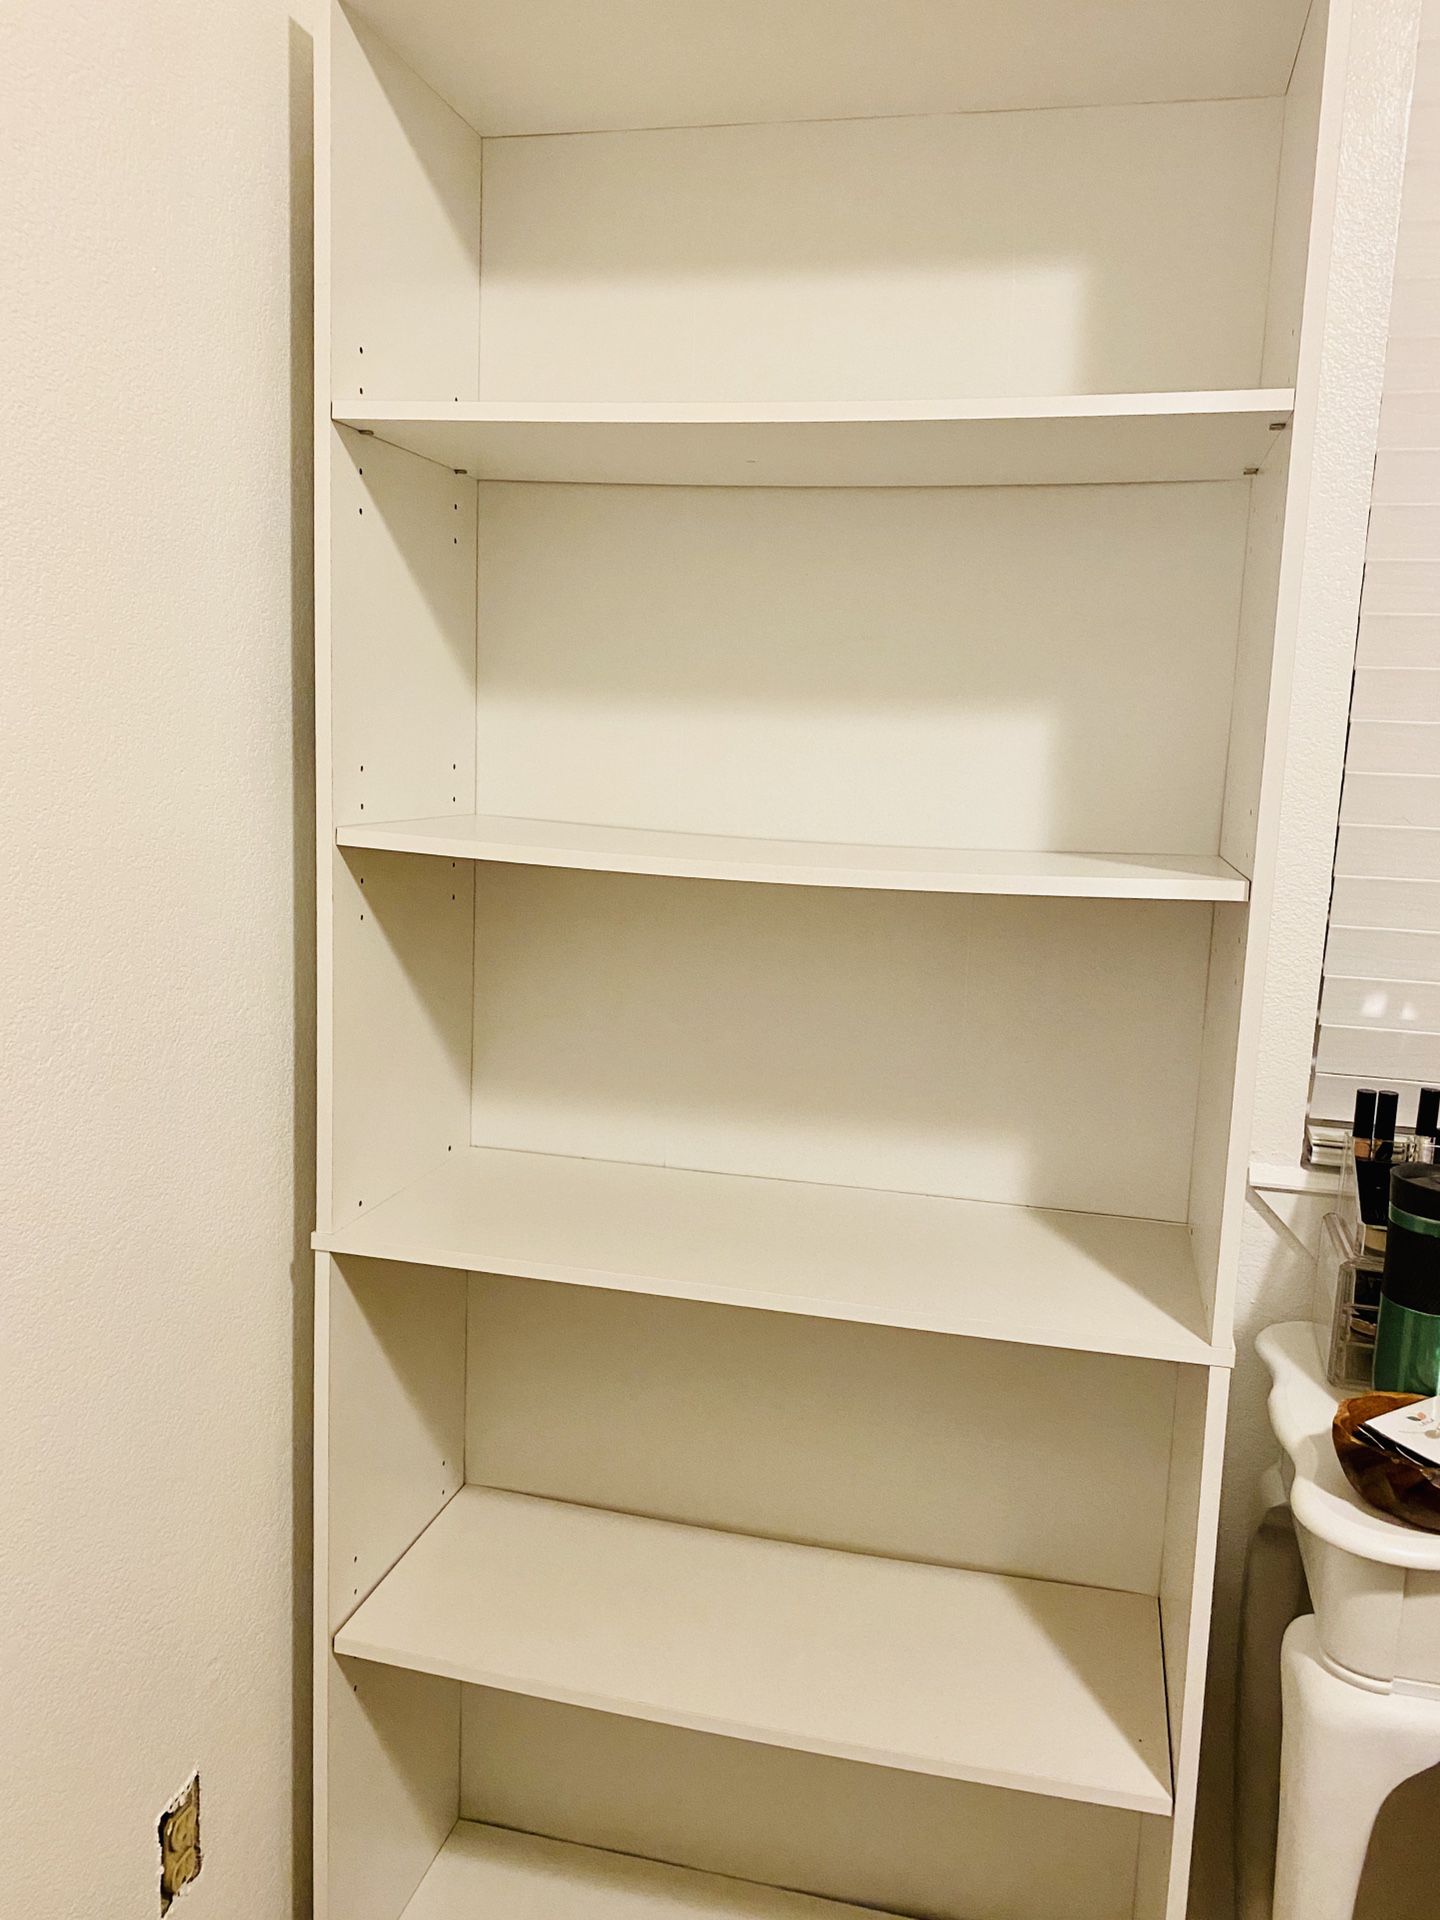 5 Shelf - white bookshelf